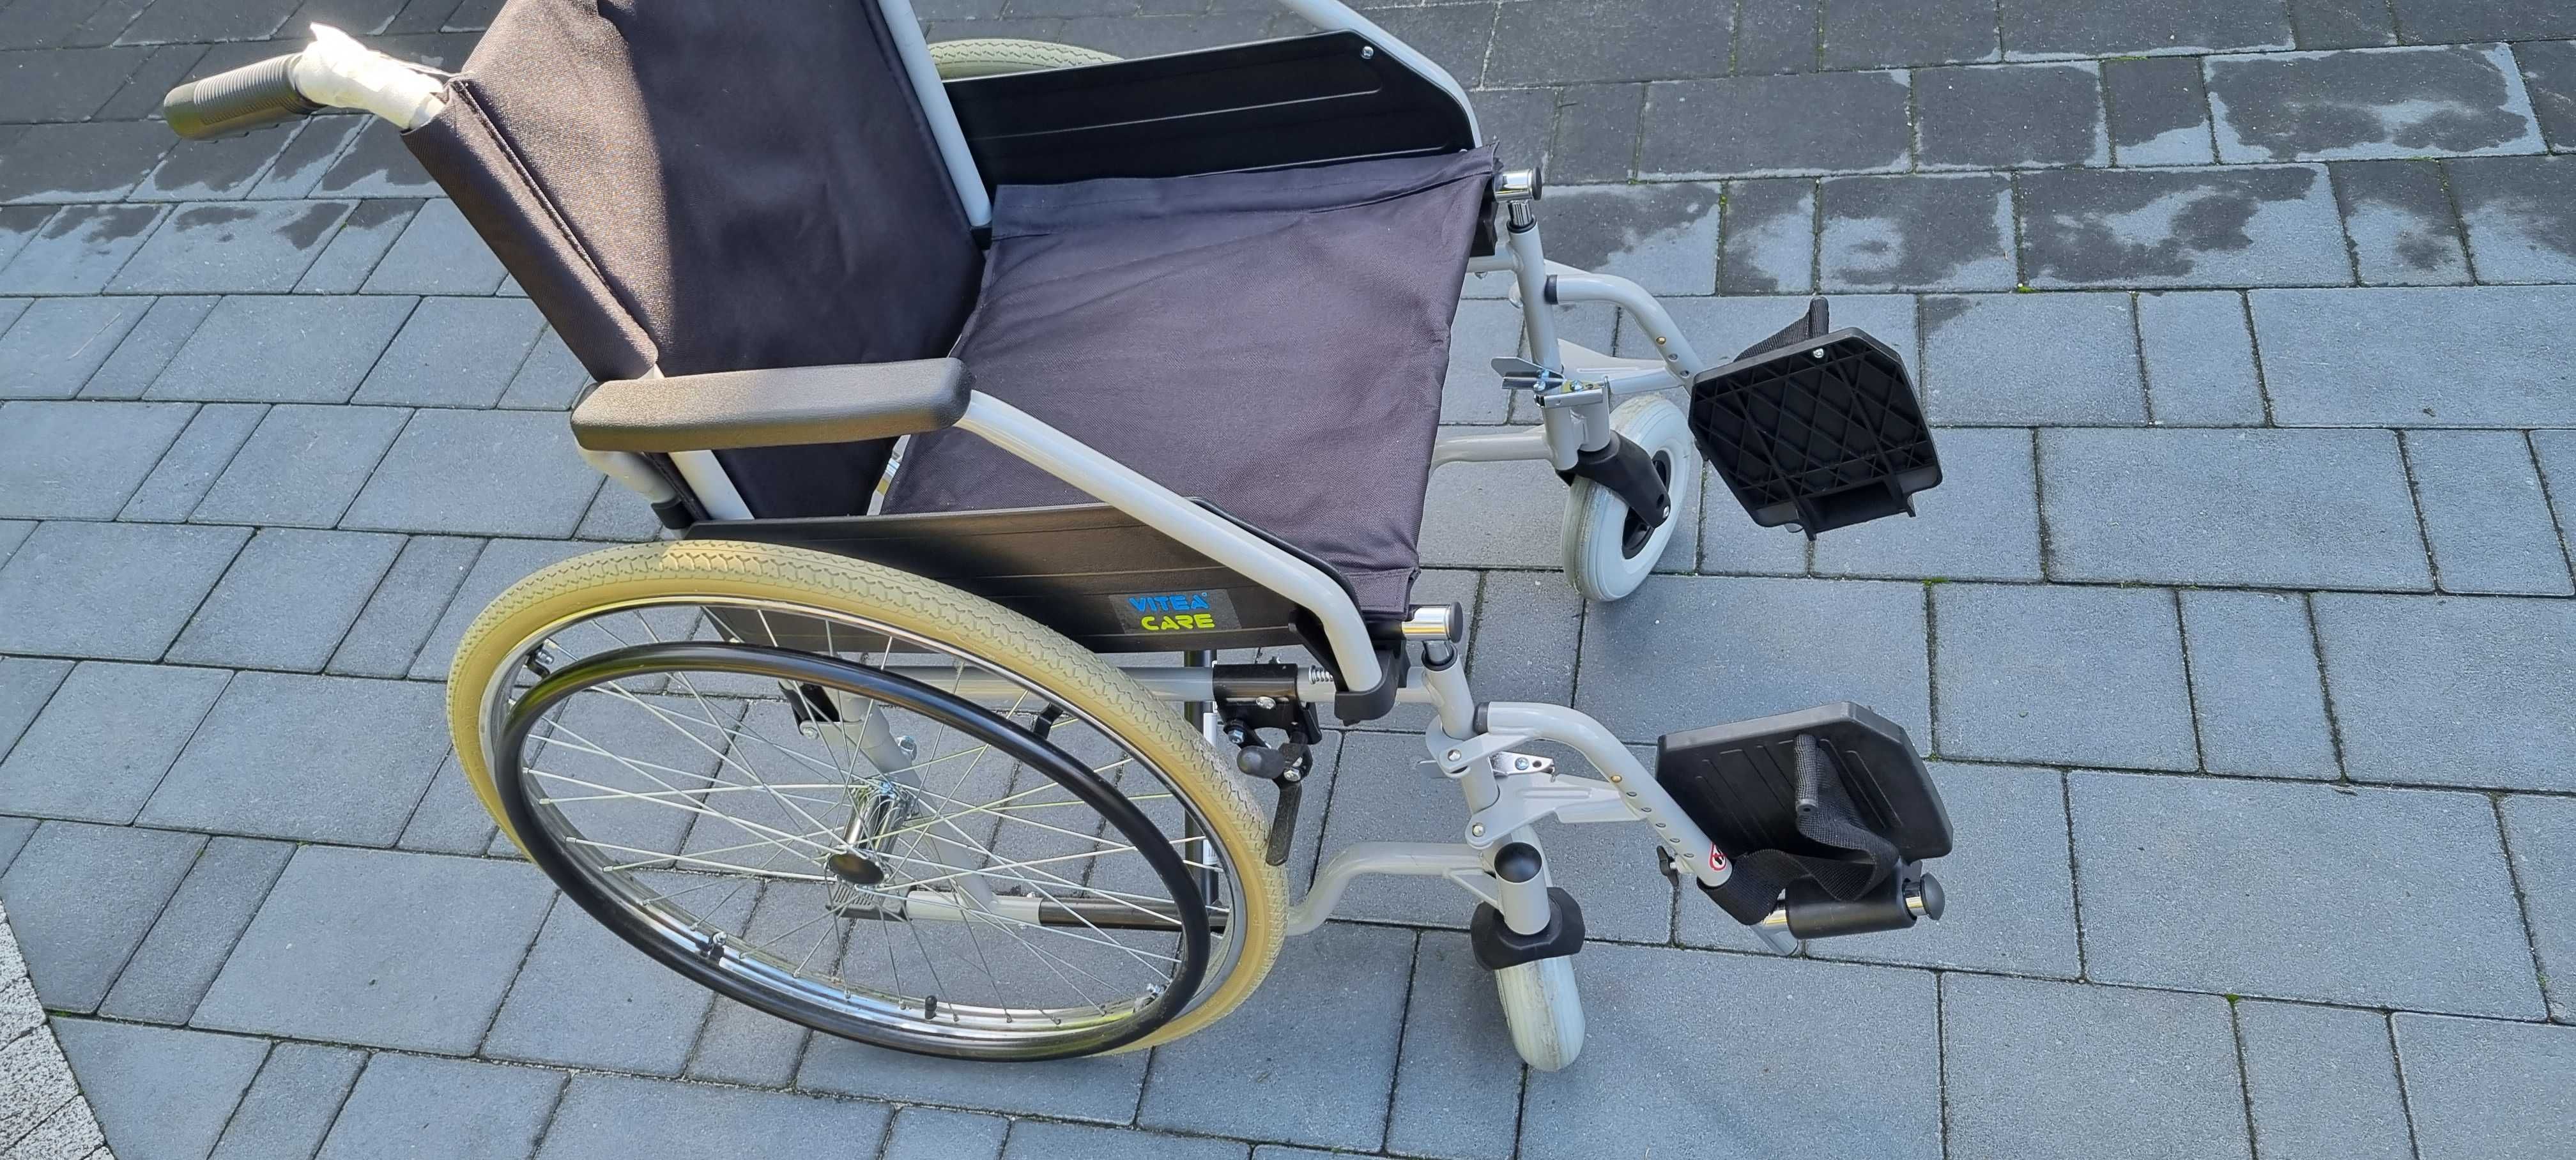 Sprzedam Nowy wózek inwalidzki